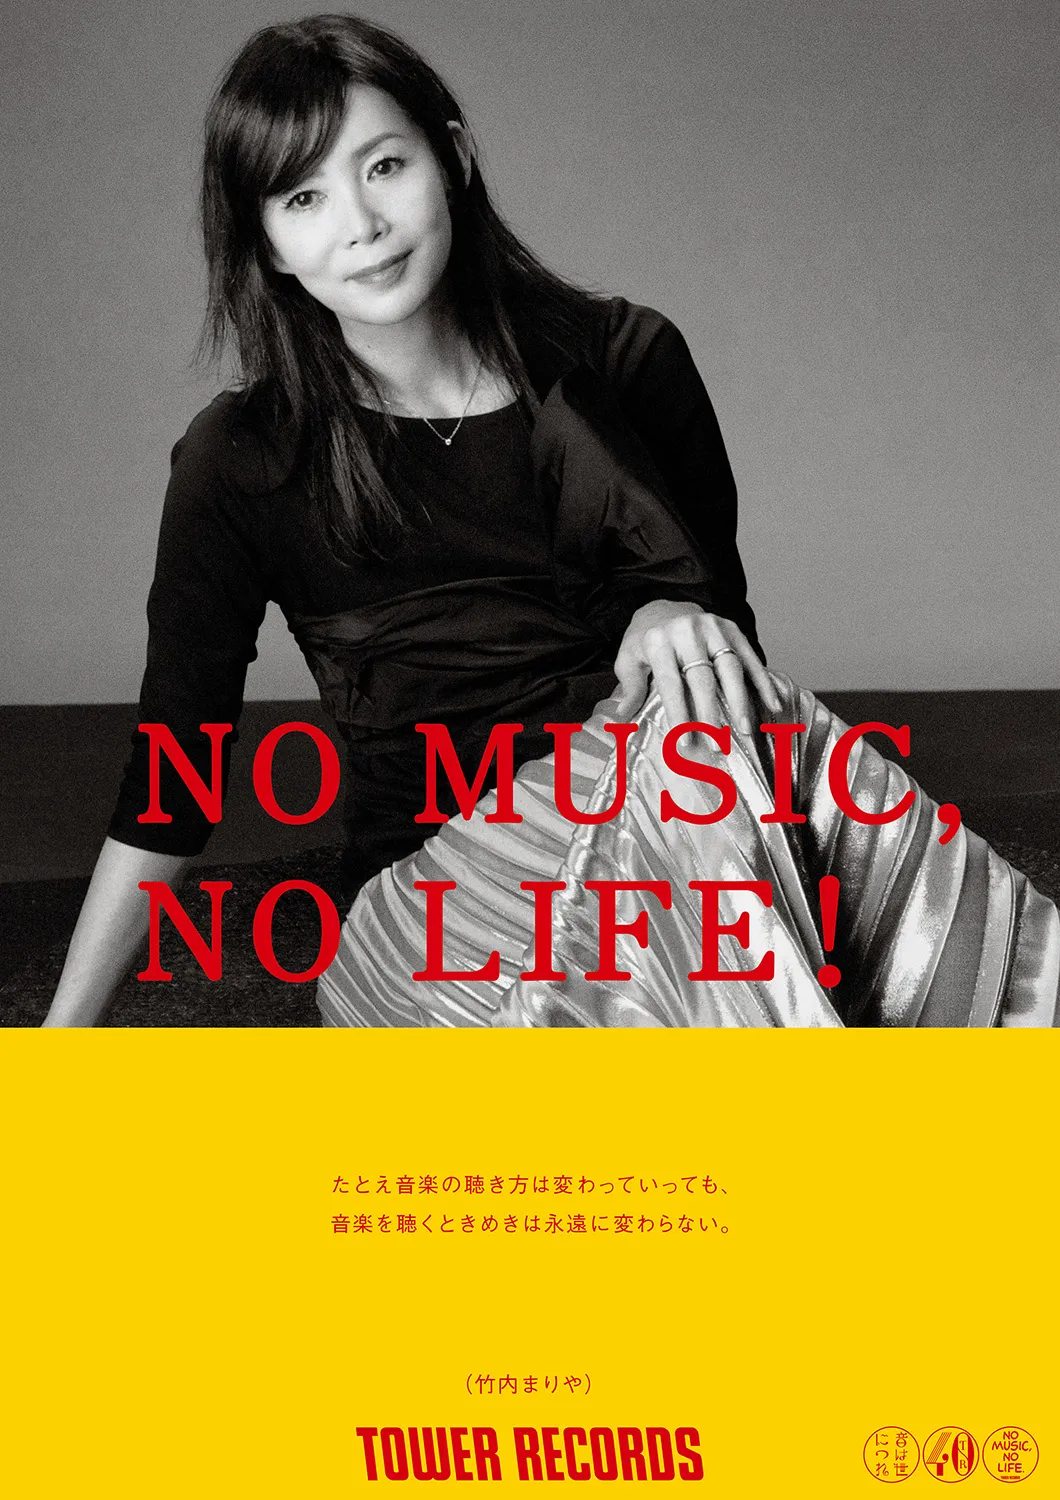 タワーレコードの意見広告シリーズ「NO MUSIC, NO LIFE.」に登場した竹内まりや